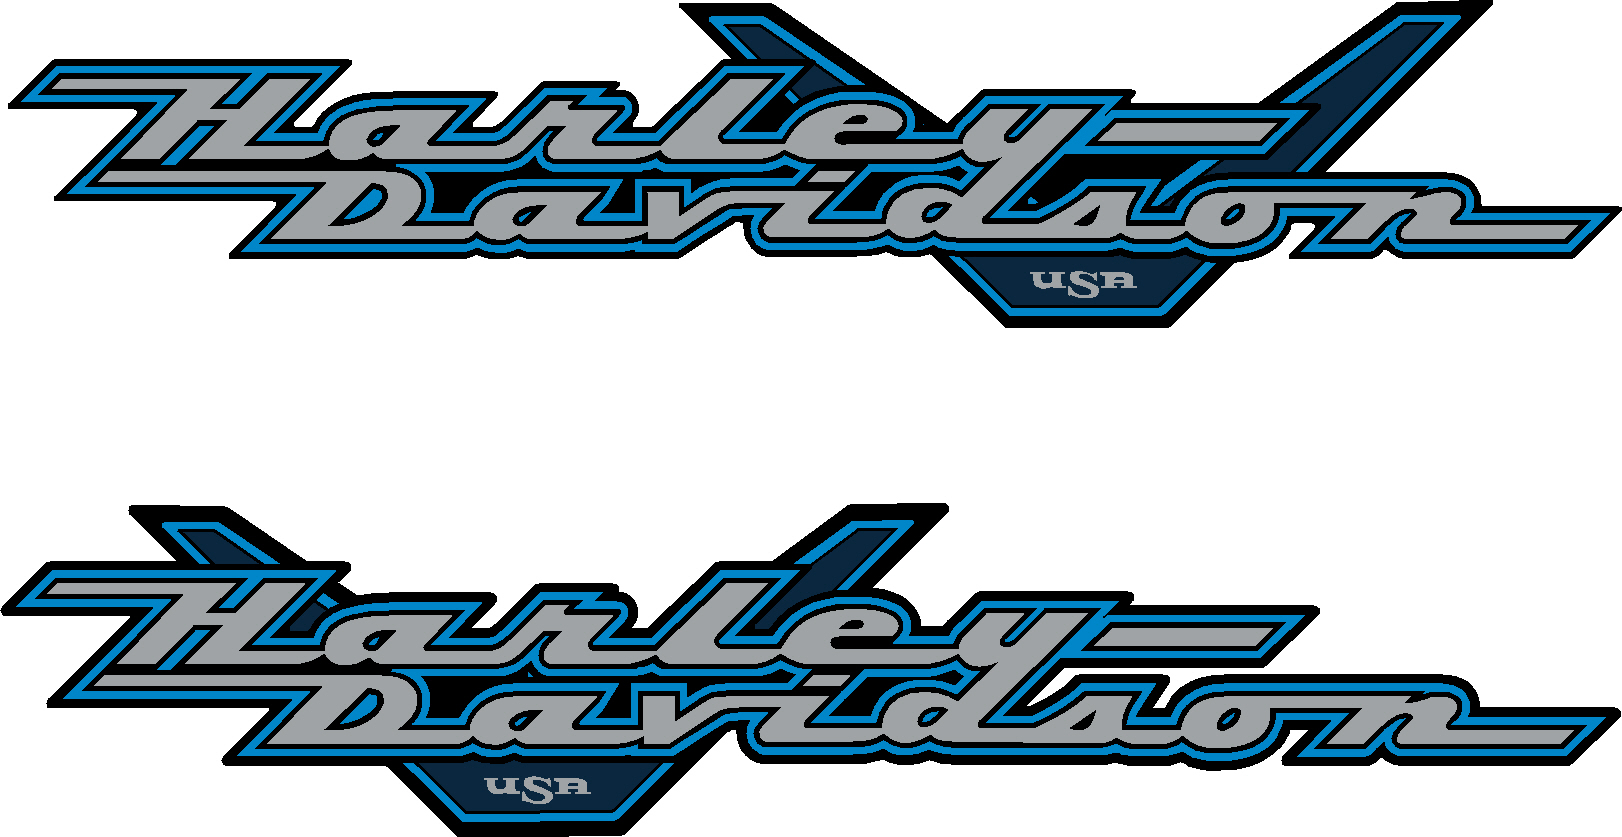 Harley-Davidson Road King FLHR Metallic Silver - Blue Decals (Set of 2) - 1999-2001  Harley, Davidson, Harley Davidson, road, king, 1999, 2000, 99, 99, 00, 00, 2009, 2010, 2012, 2011, 2013, 2014, softtail, soft-tail, harley-davidson, v, decal, sticker, emblem, flhr, FLHR, road, king, roadking,INCR10Aug2021